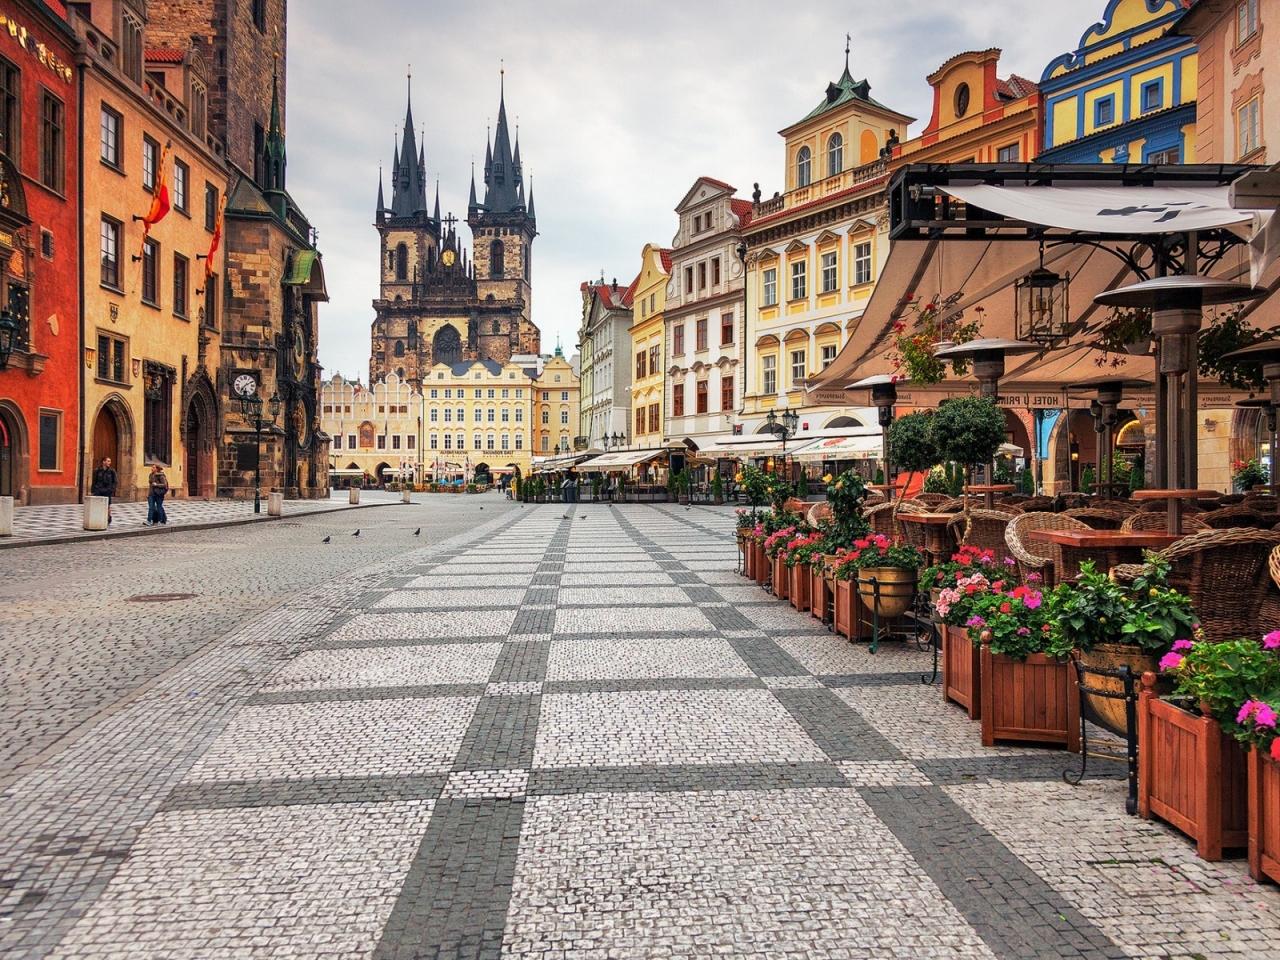 Prague City Center for 1280 x 960 resolution